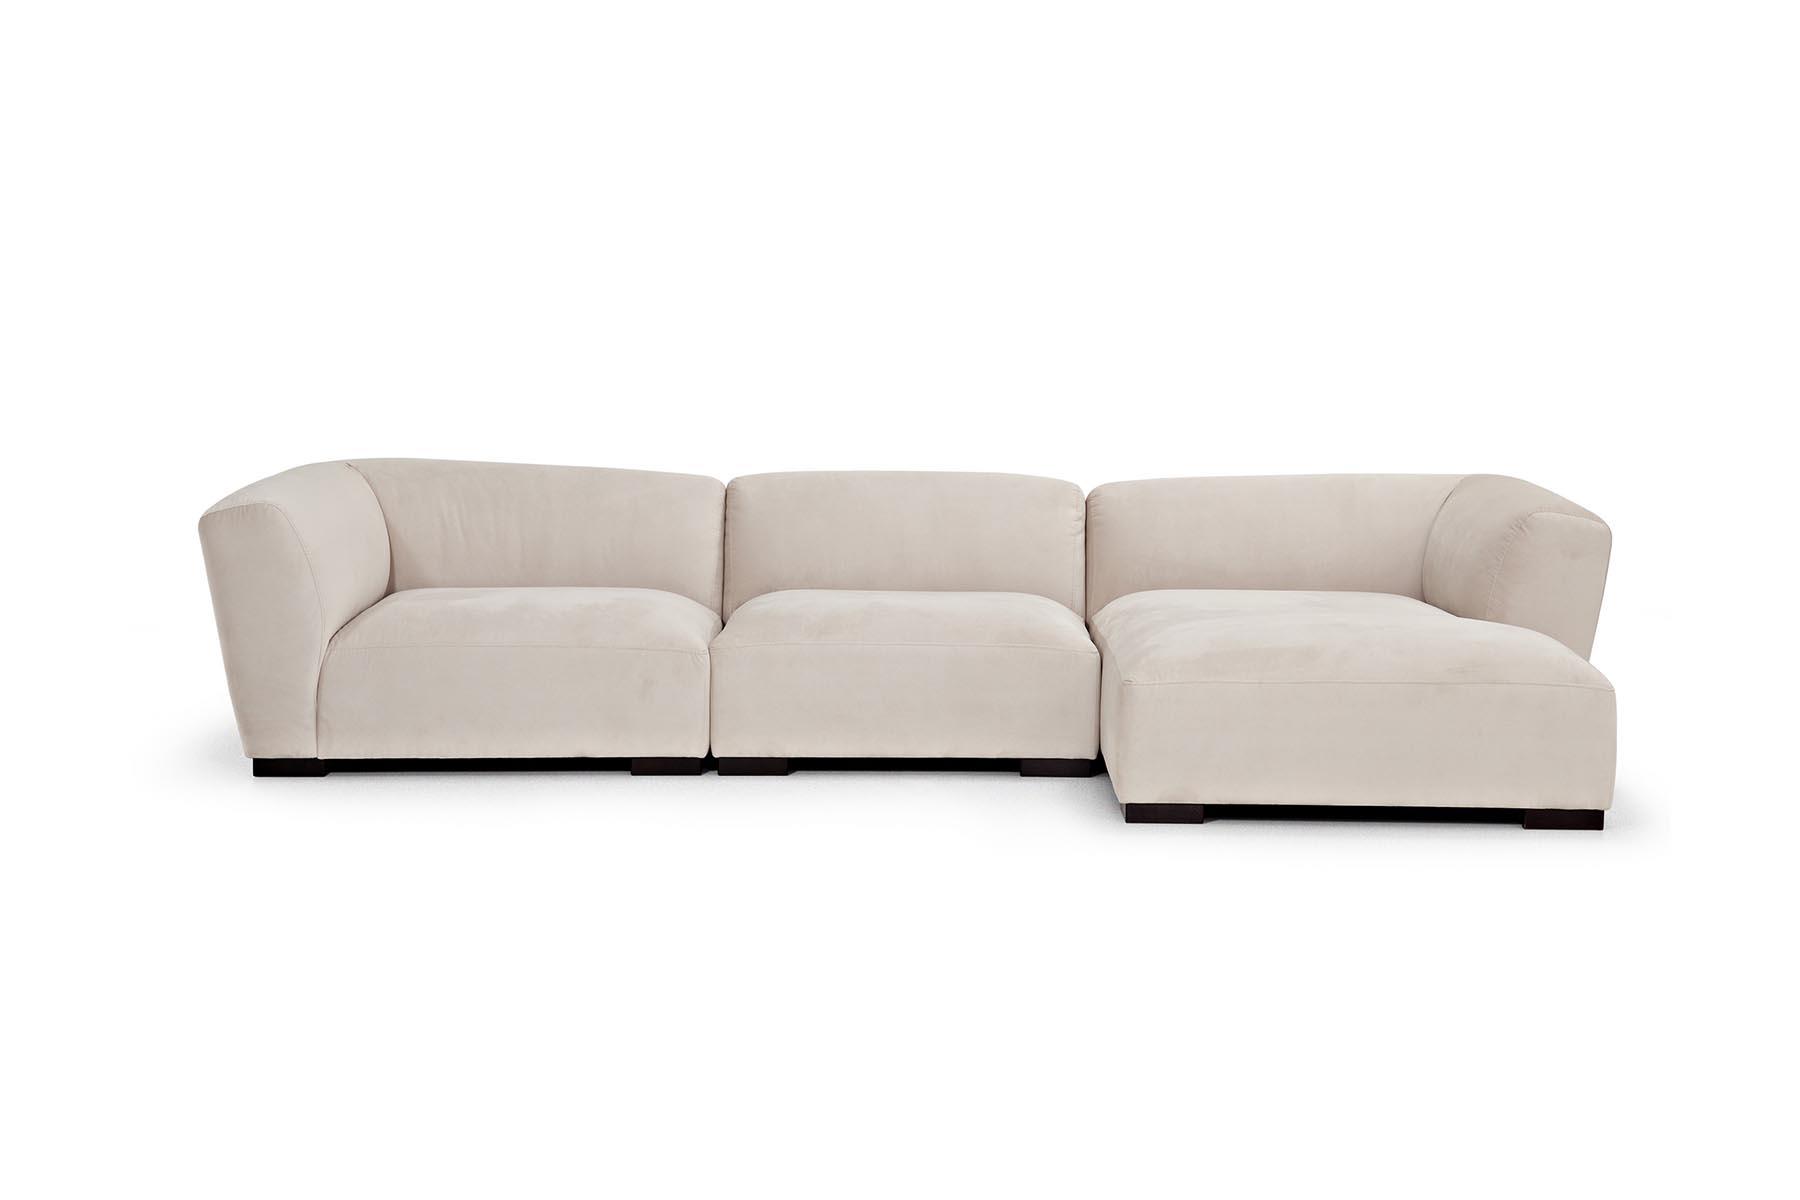 Jedna od najudobnijih sofa iz Inside asortimana proizvoda. Njeni jastuci daju osjećaj potpune mekoće i uživanja. Preporučujemo je za veće prostorije.